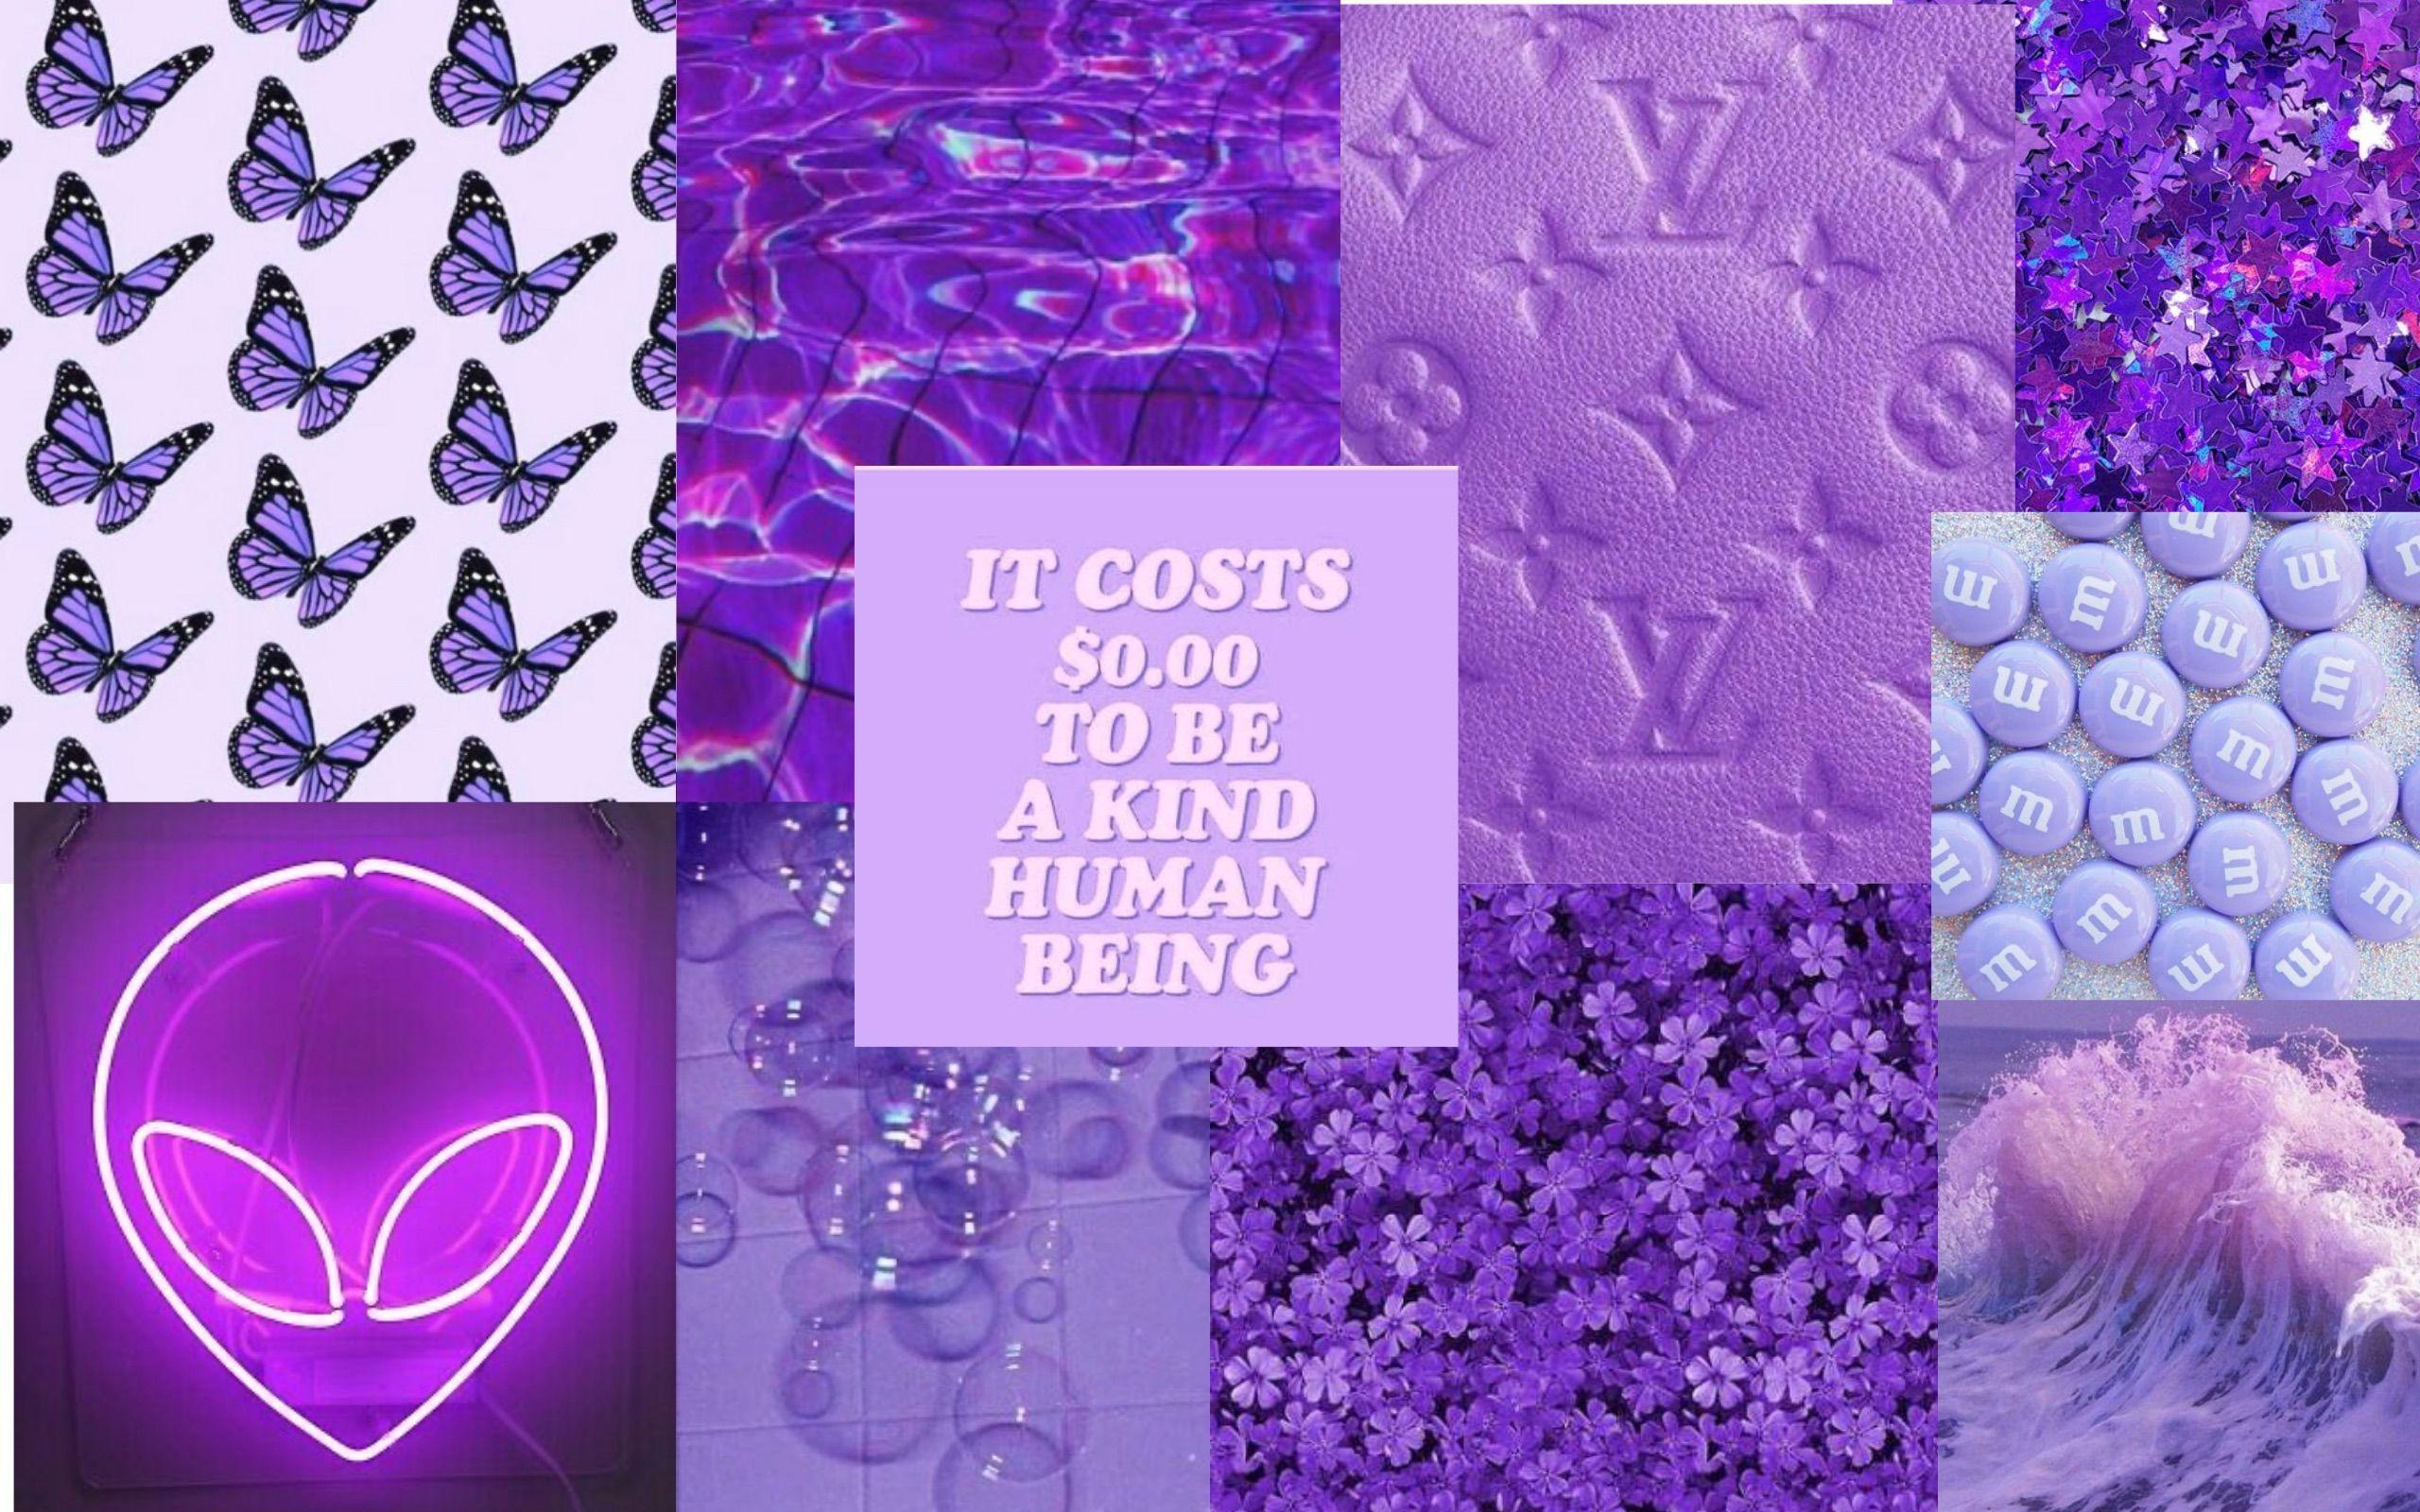 Hãy khám phá bức hình với Collage background purple để thấy ngay sự tinh tế và lãng mạn mà màu tím sen hòa vào trong thiết kế này. Là tuyệt phẩm của năng lượng màu sắc và các hình ảnh phù hợp cho các ứng dụng đa dạng, bức tranh tổng hợp này sẽ chắc chắn đem lại cho bạn những giây phút thư giãn và hưởng thụ.